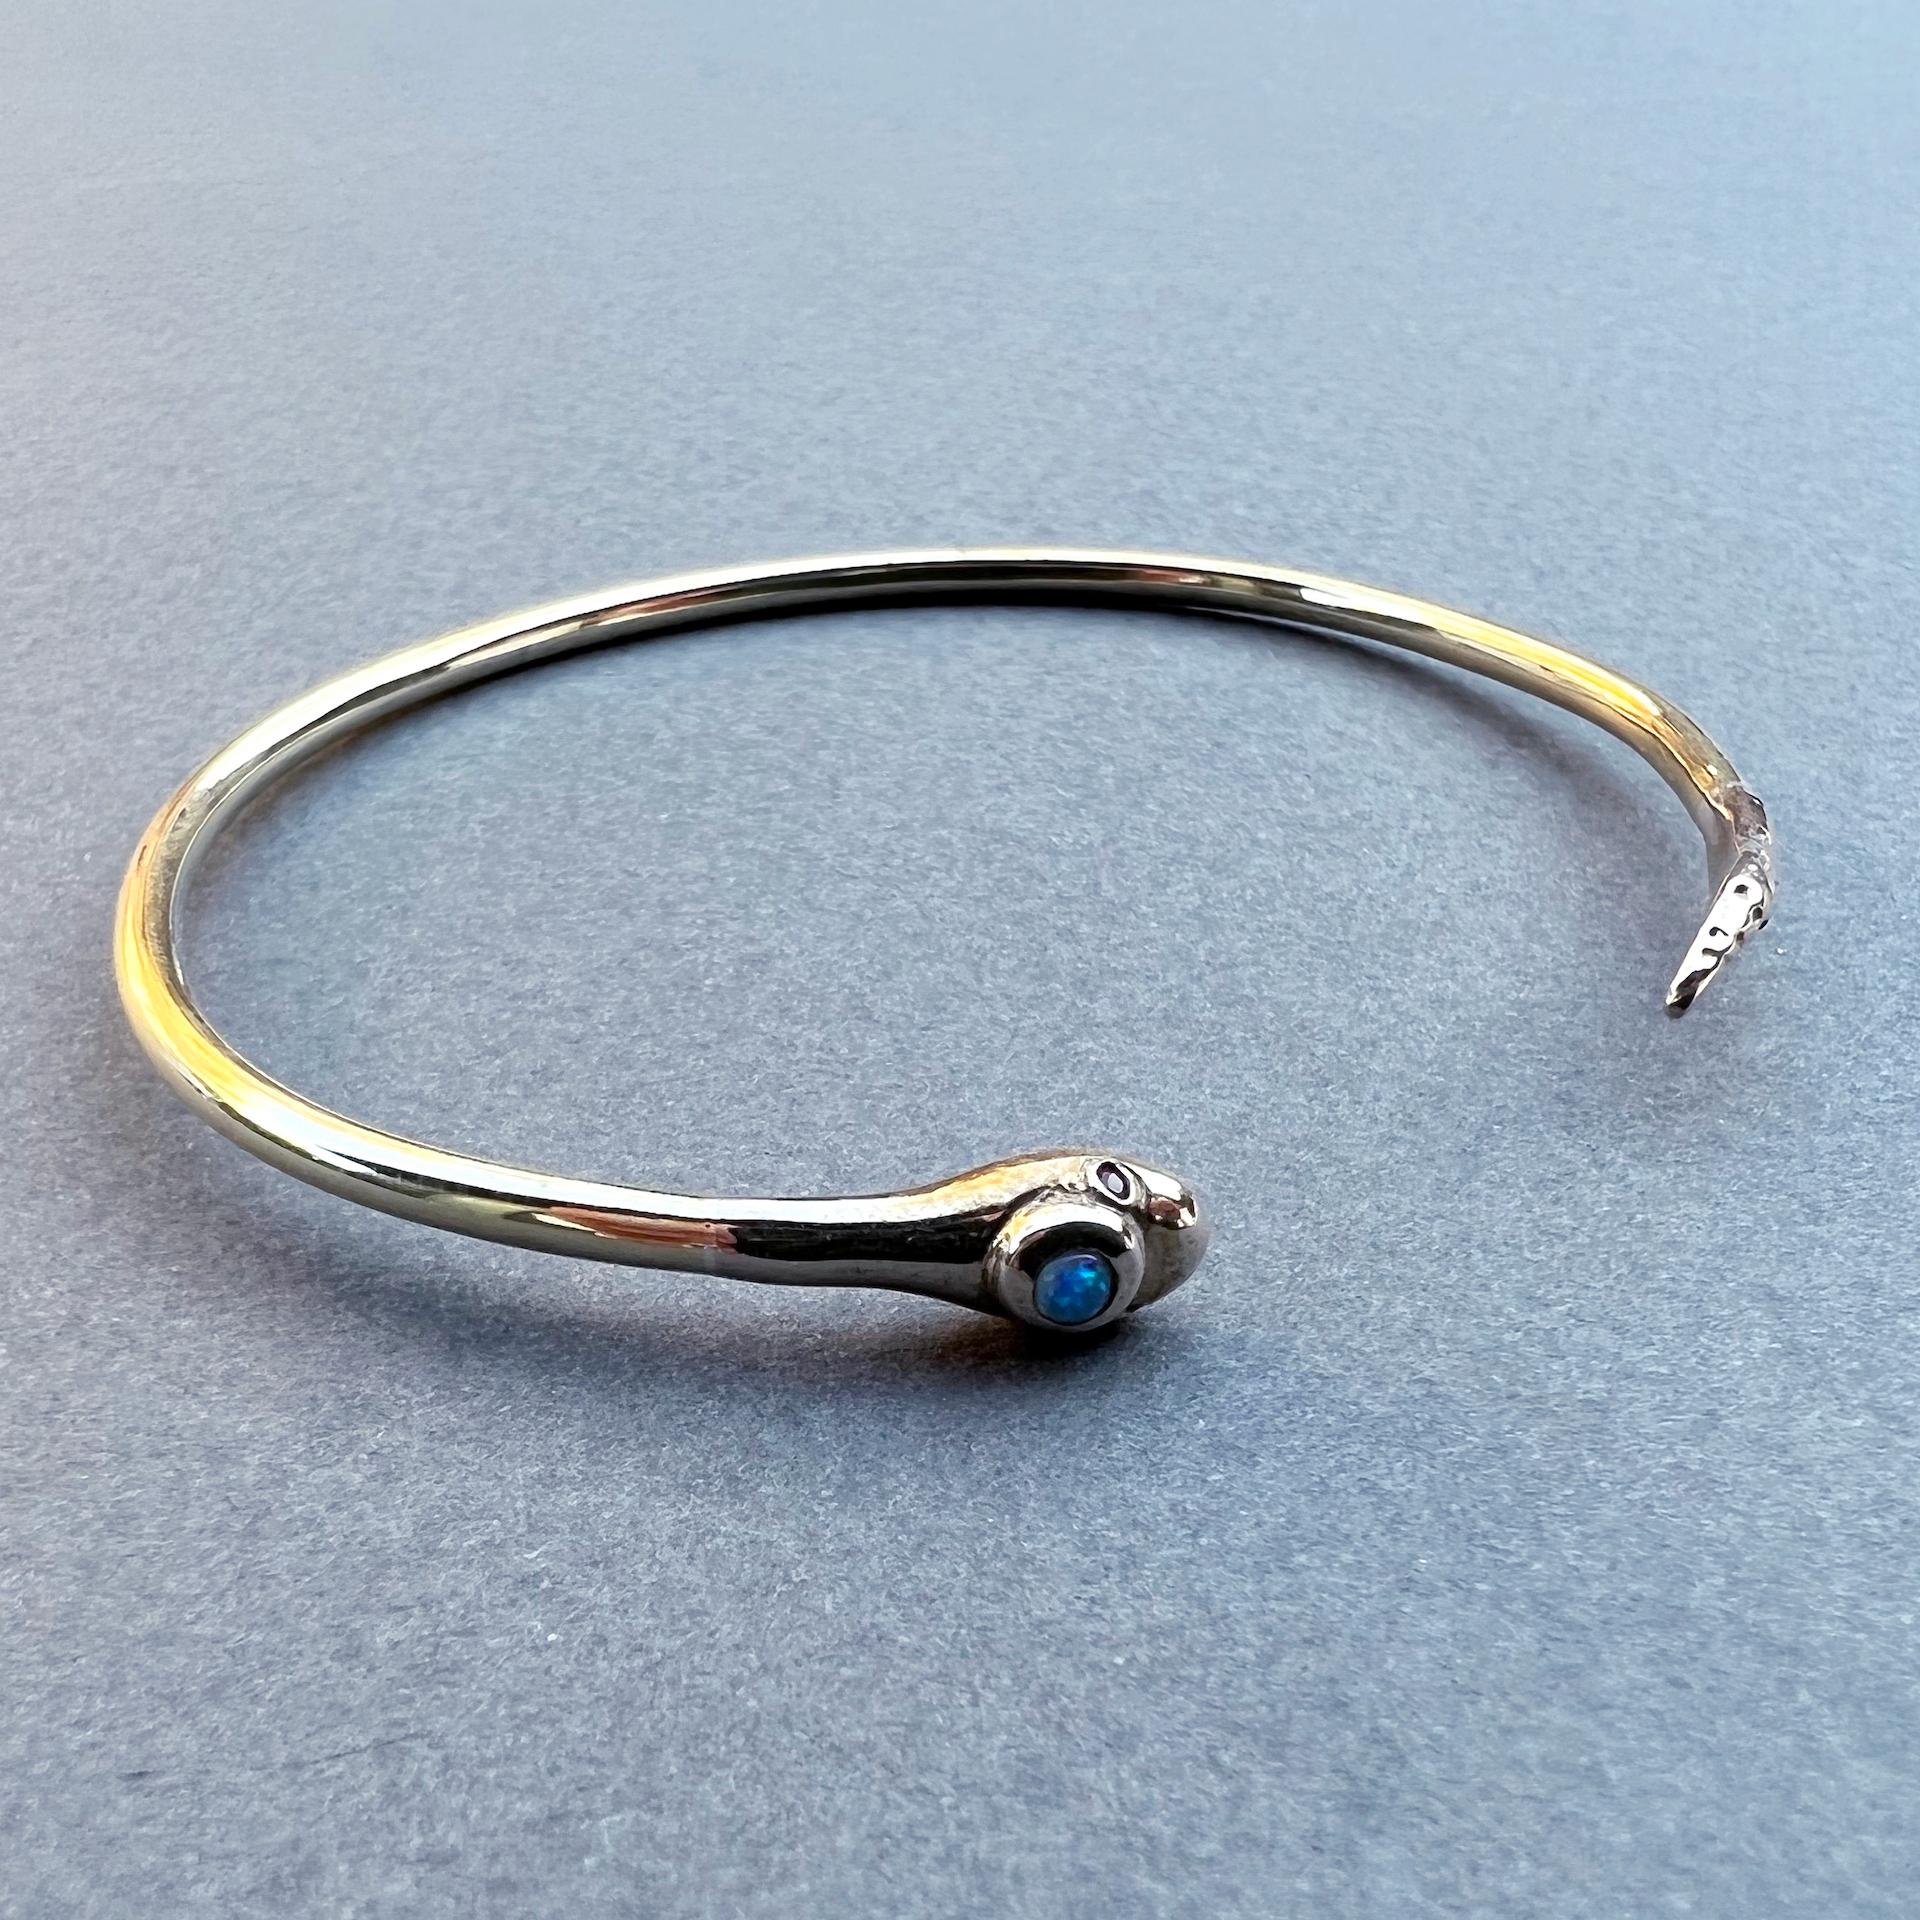 Bracelet laiton bronze Rubis Opale Serpent J Dauphin

Ce bracelet est inspiré de l'époque victorienne.
Il a 2 yeux en rubis et une opale sur la tête.

Il peut être personnalisé dans votre taille.

Fabriqué à la main à Los Angeles

Fabriqué sur